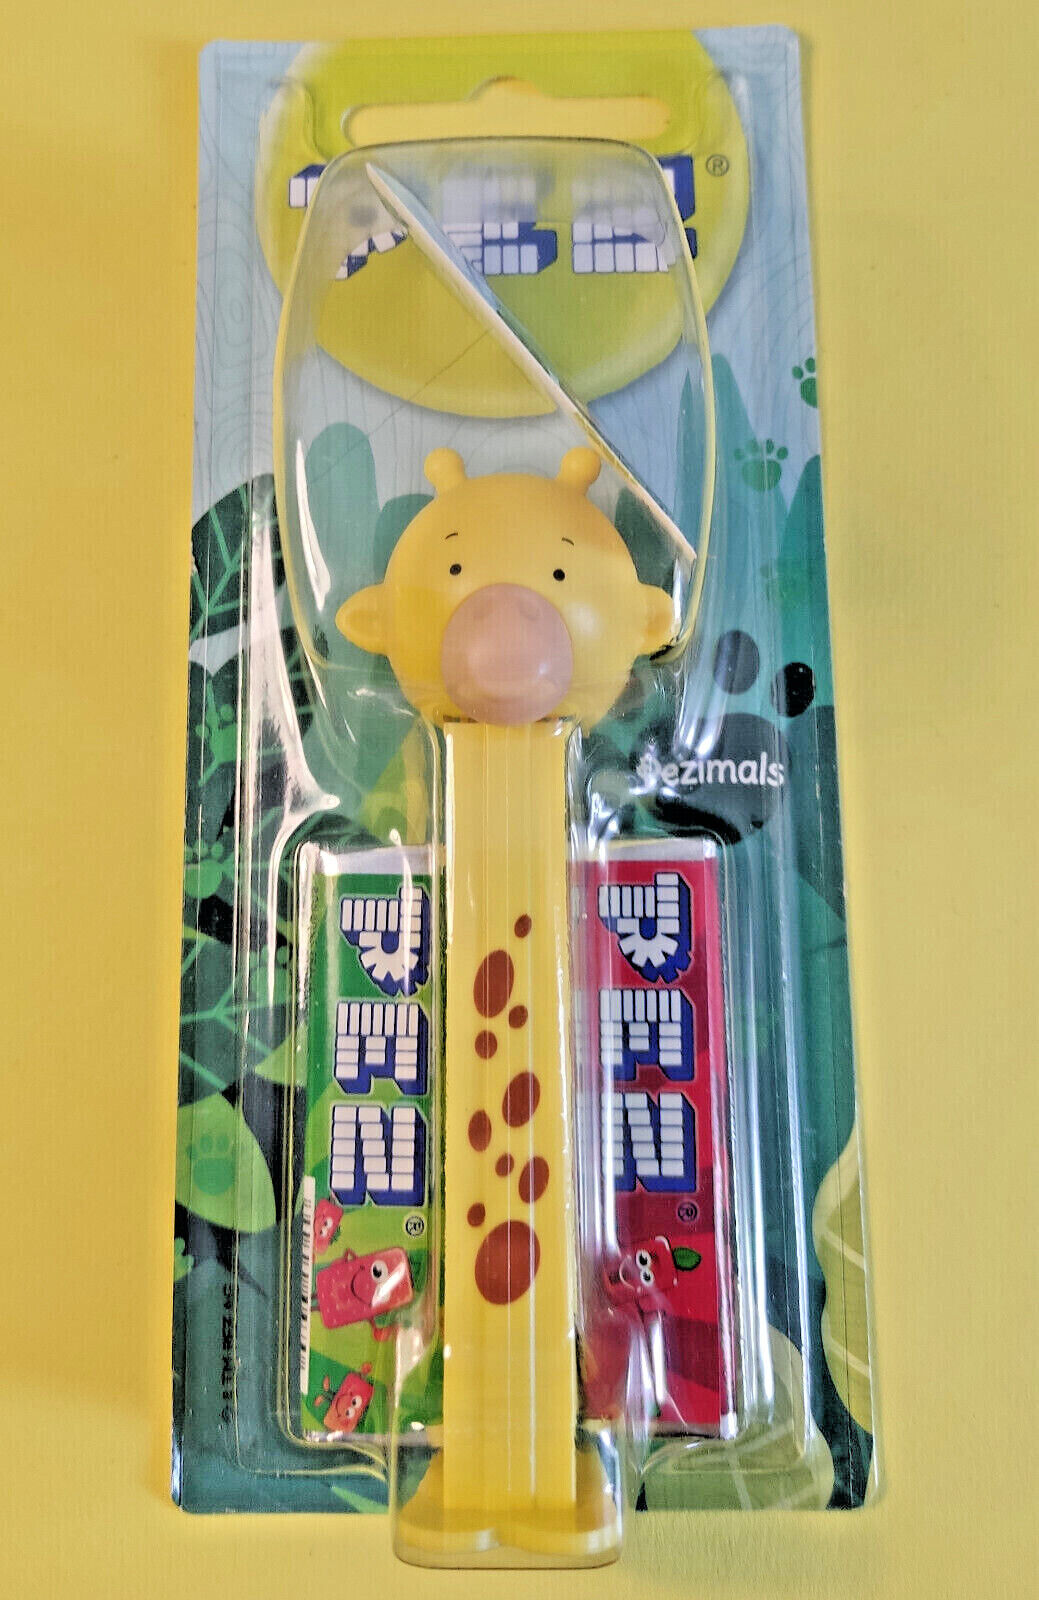 Gigi Giraffe (Pezimals) - Super New Unopened PEZ Dispenser - 7.5 Patent, Hungary